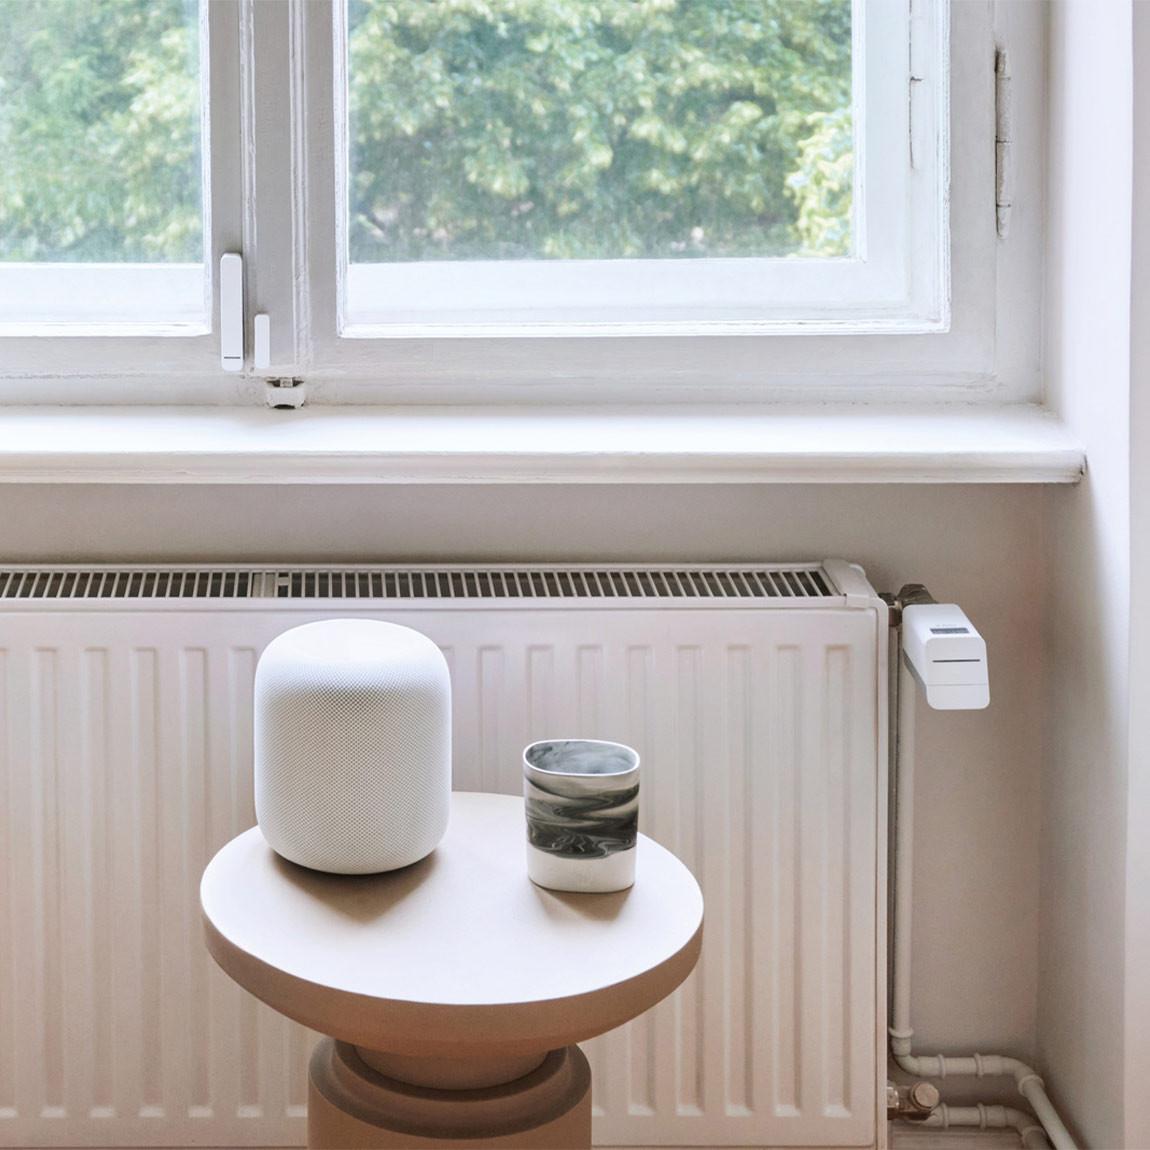 Bosch Smart Home Heizungsthermostat im Wohnzimmer neben Apple HomePod